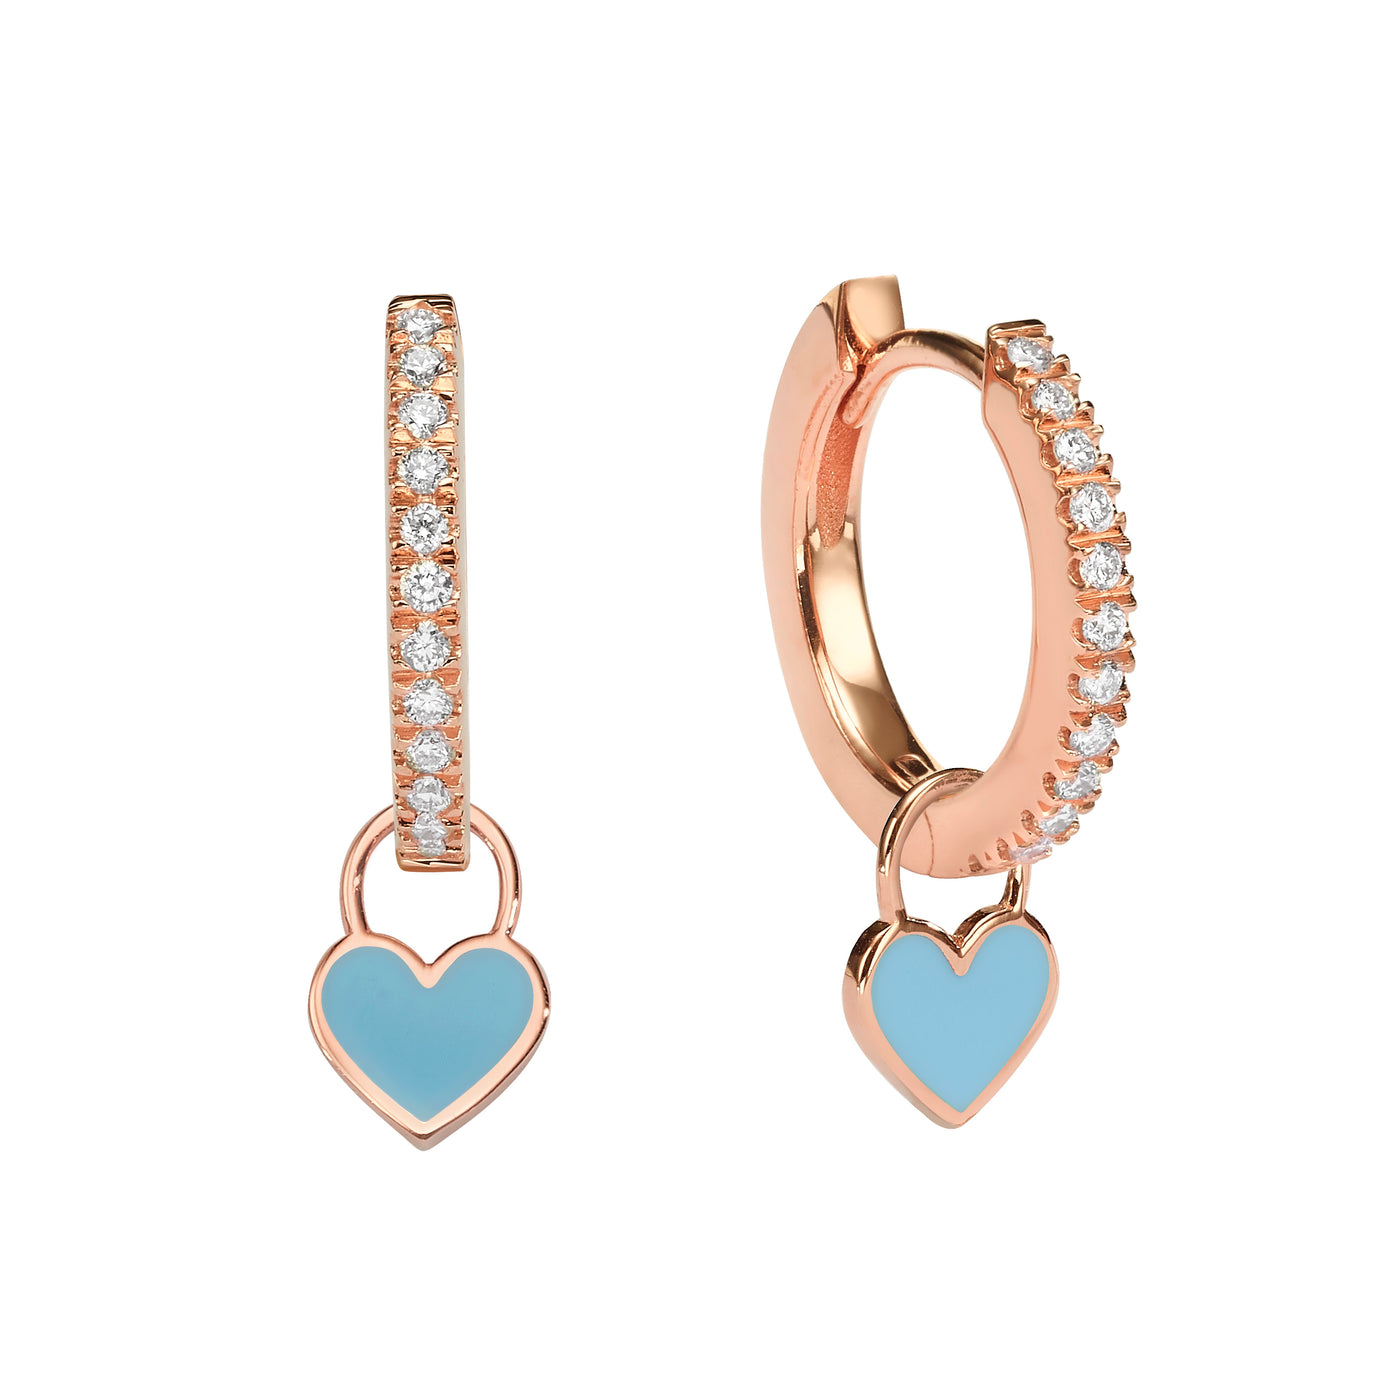 Midi Gypsy hearts earrings